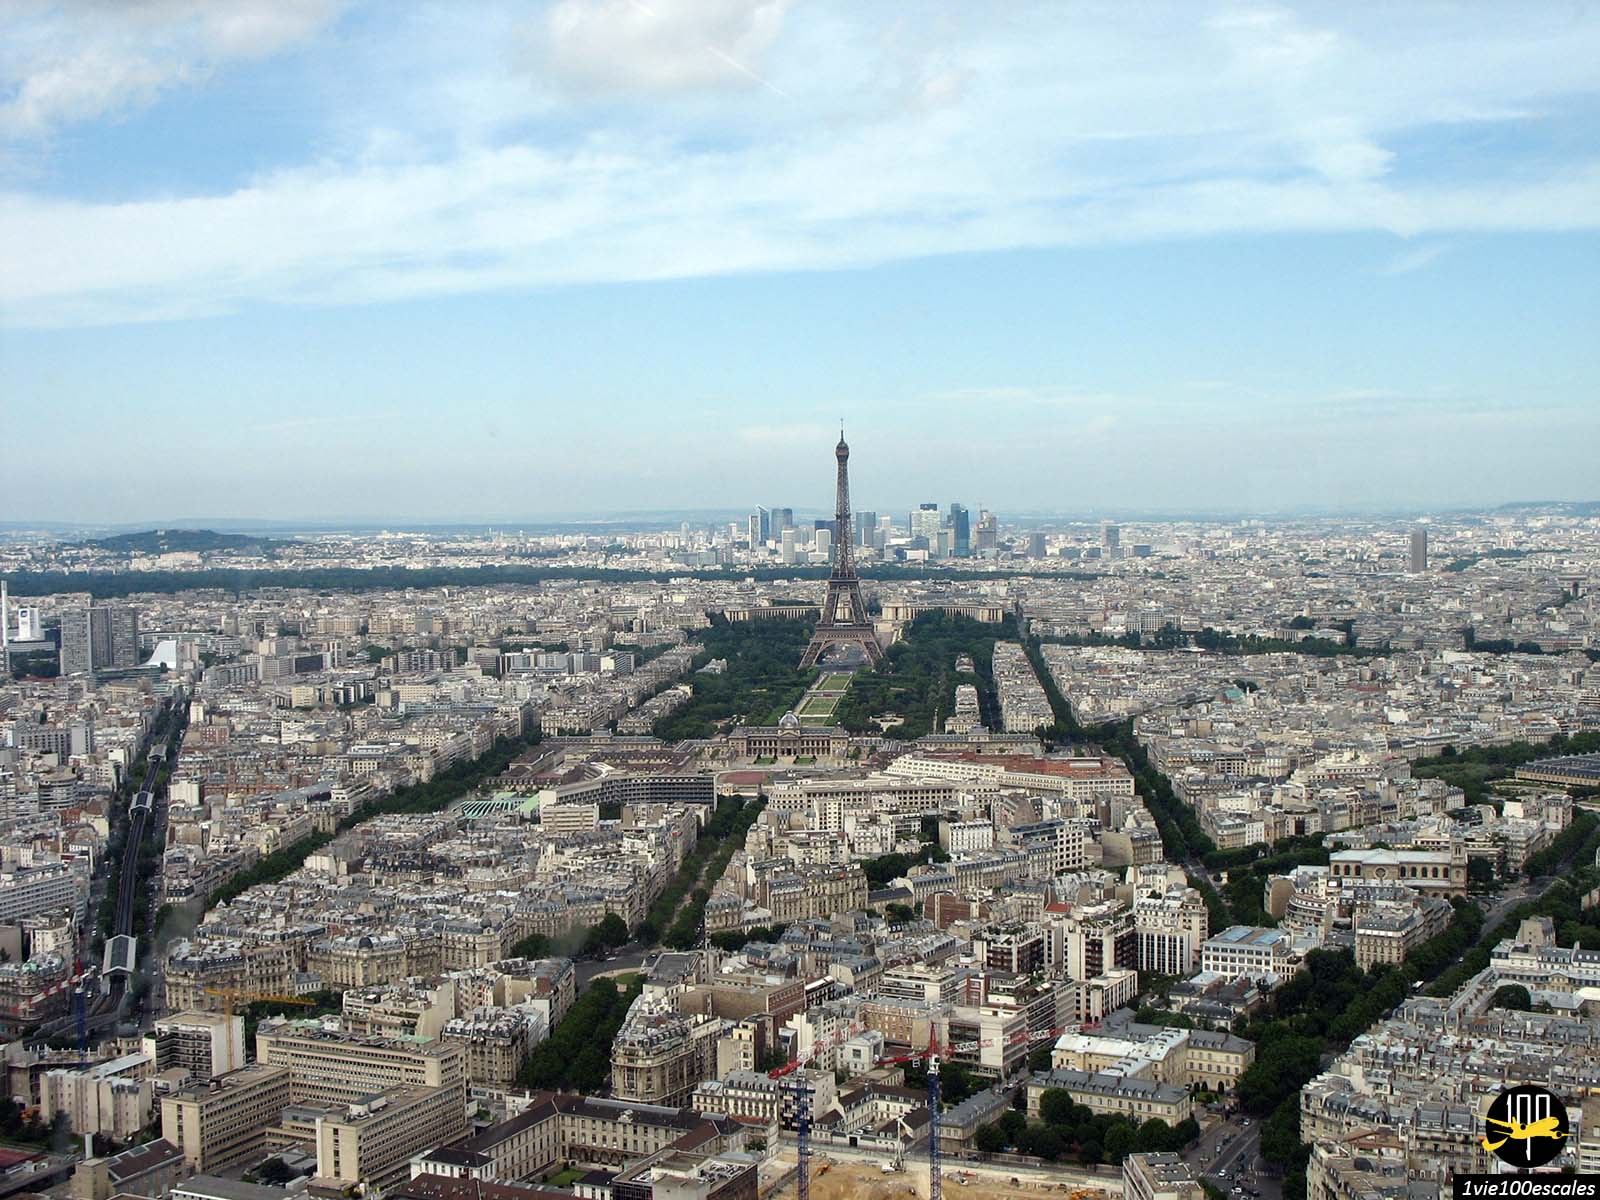 La plus belle vue panoramique sur Paris à plus de 200 mètres d'altitude au sommet de la Tour Montparnasse